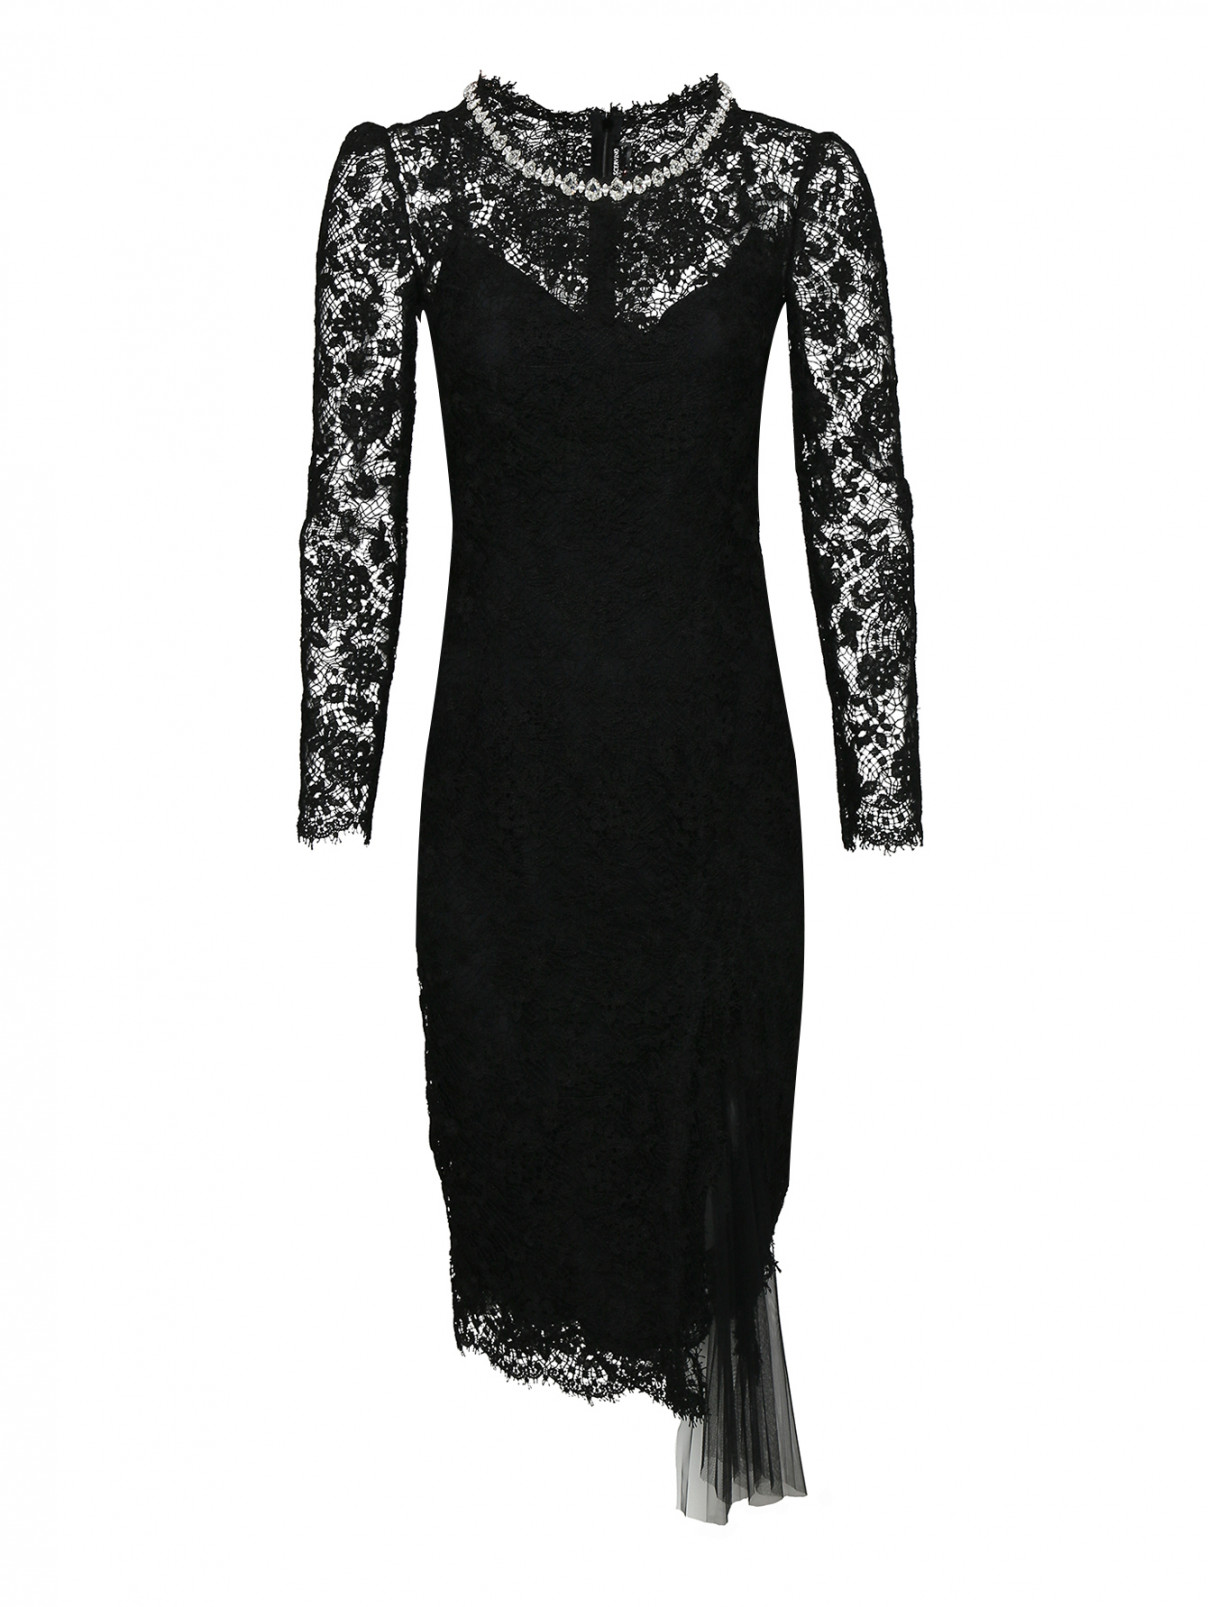 Платье кружевное с декором стразами Ermanno Scervino  –  Общий вид  – Цвет:  Черный